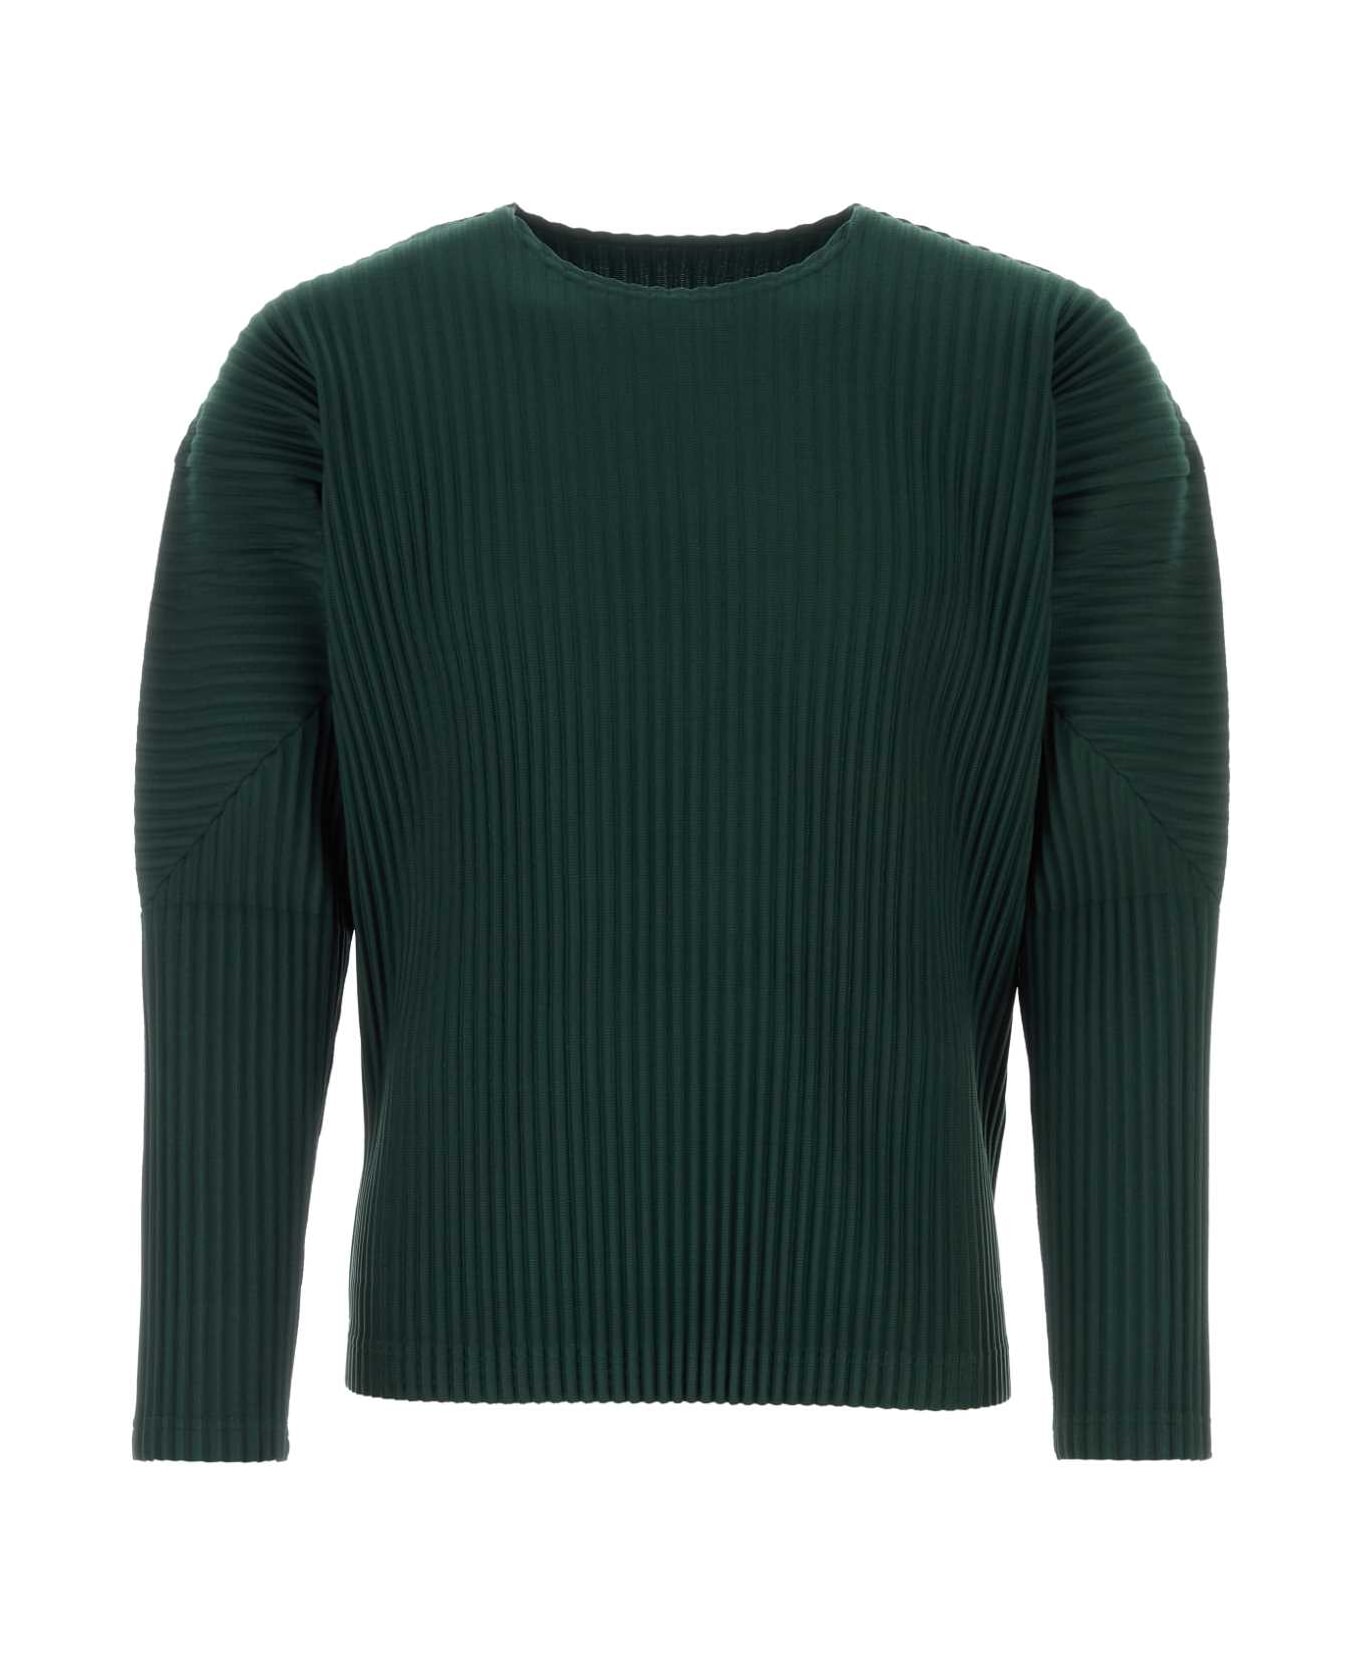 Homme Plissé Issey Miyake Emerald Green Polyester T-shirt - DEEPGREEN